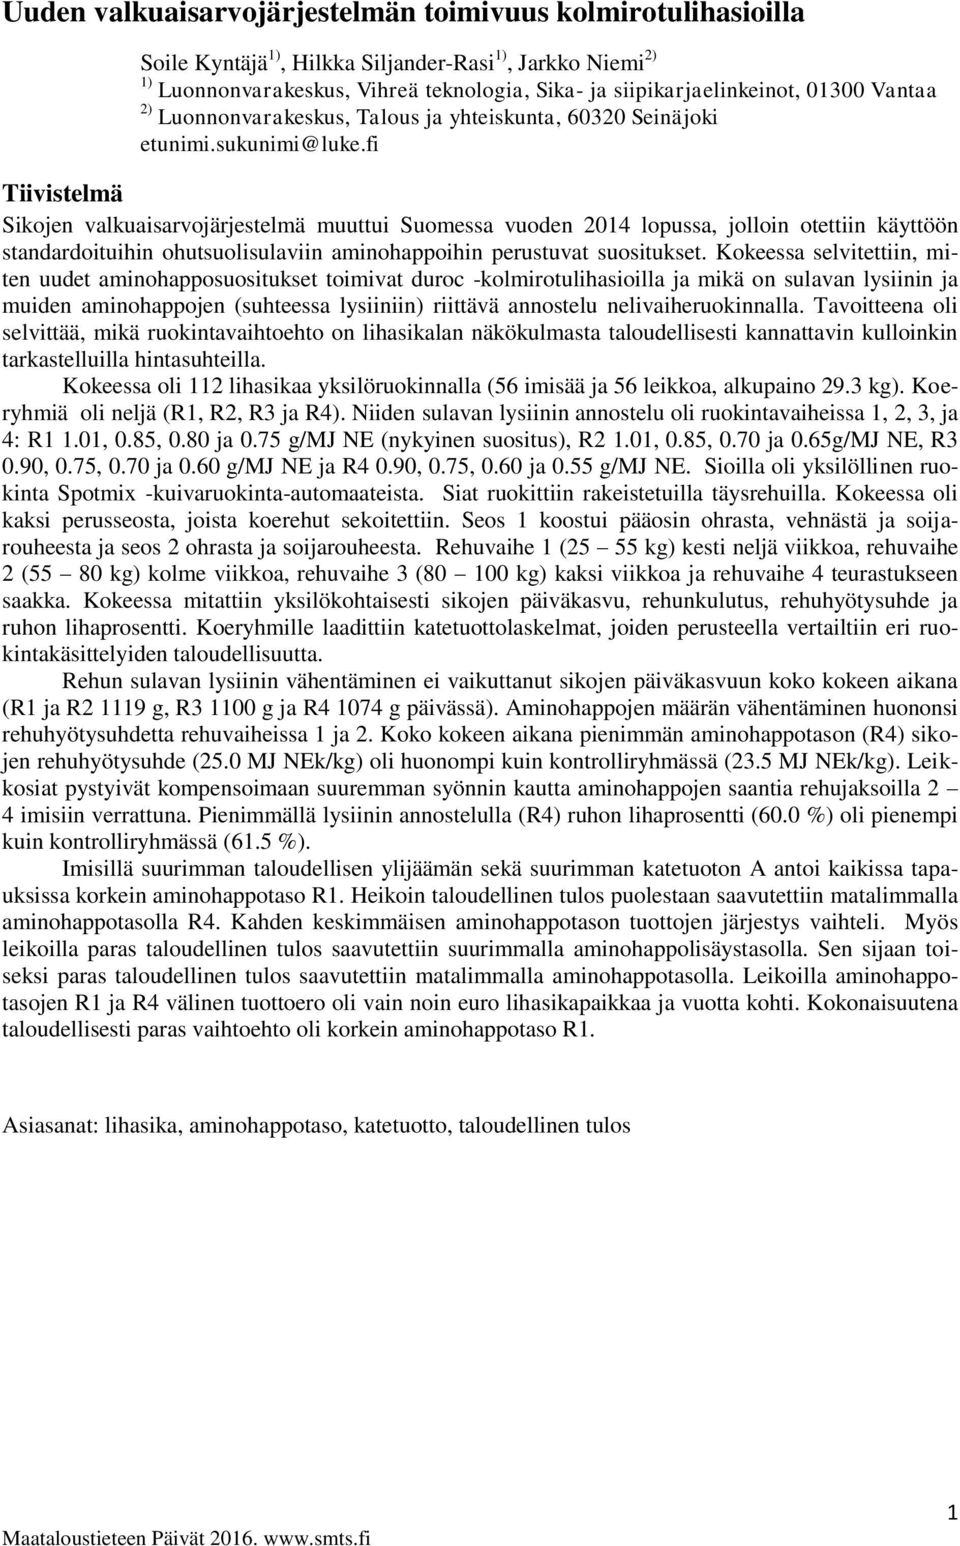 fi Tiivistelmä Sikojen valkuaisarvojärjestelmä muuttui Suomessa vuoden 2014 lopussa, jolloin otettiin käyttöön standardoituihin ohutsuolisulaviin aminohappoihin perustuvat suositukset.